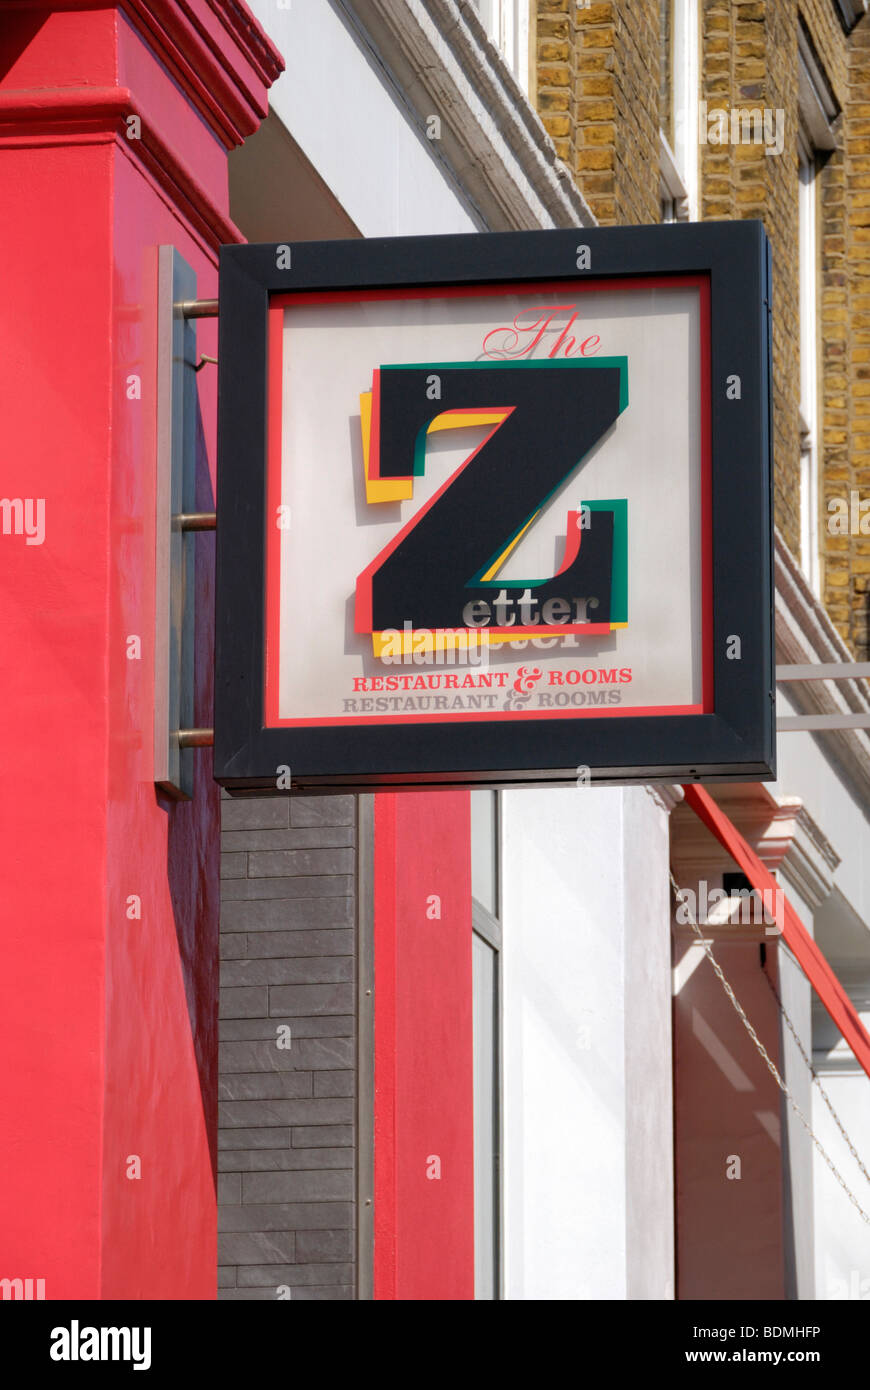 Zetter hotel and restaurant in St John's Square, Clerkenwell, London Stock Photo